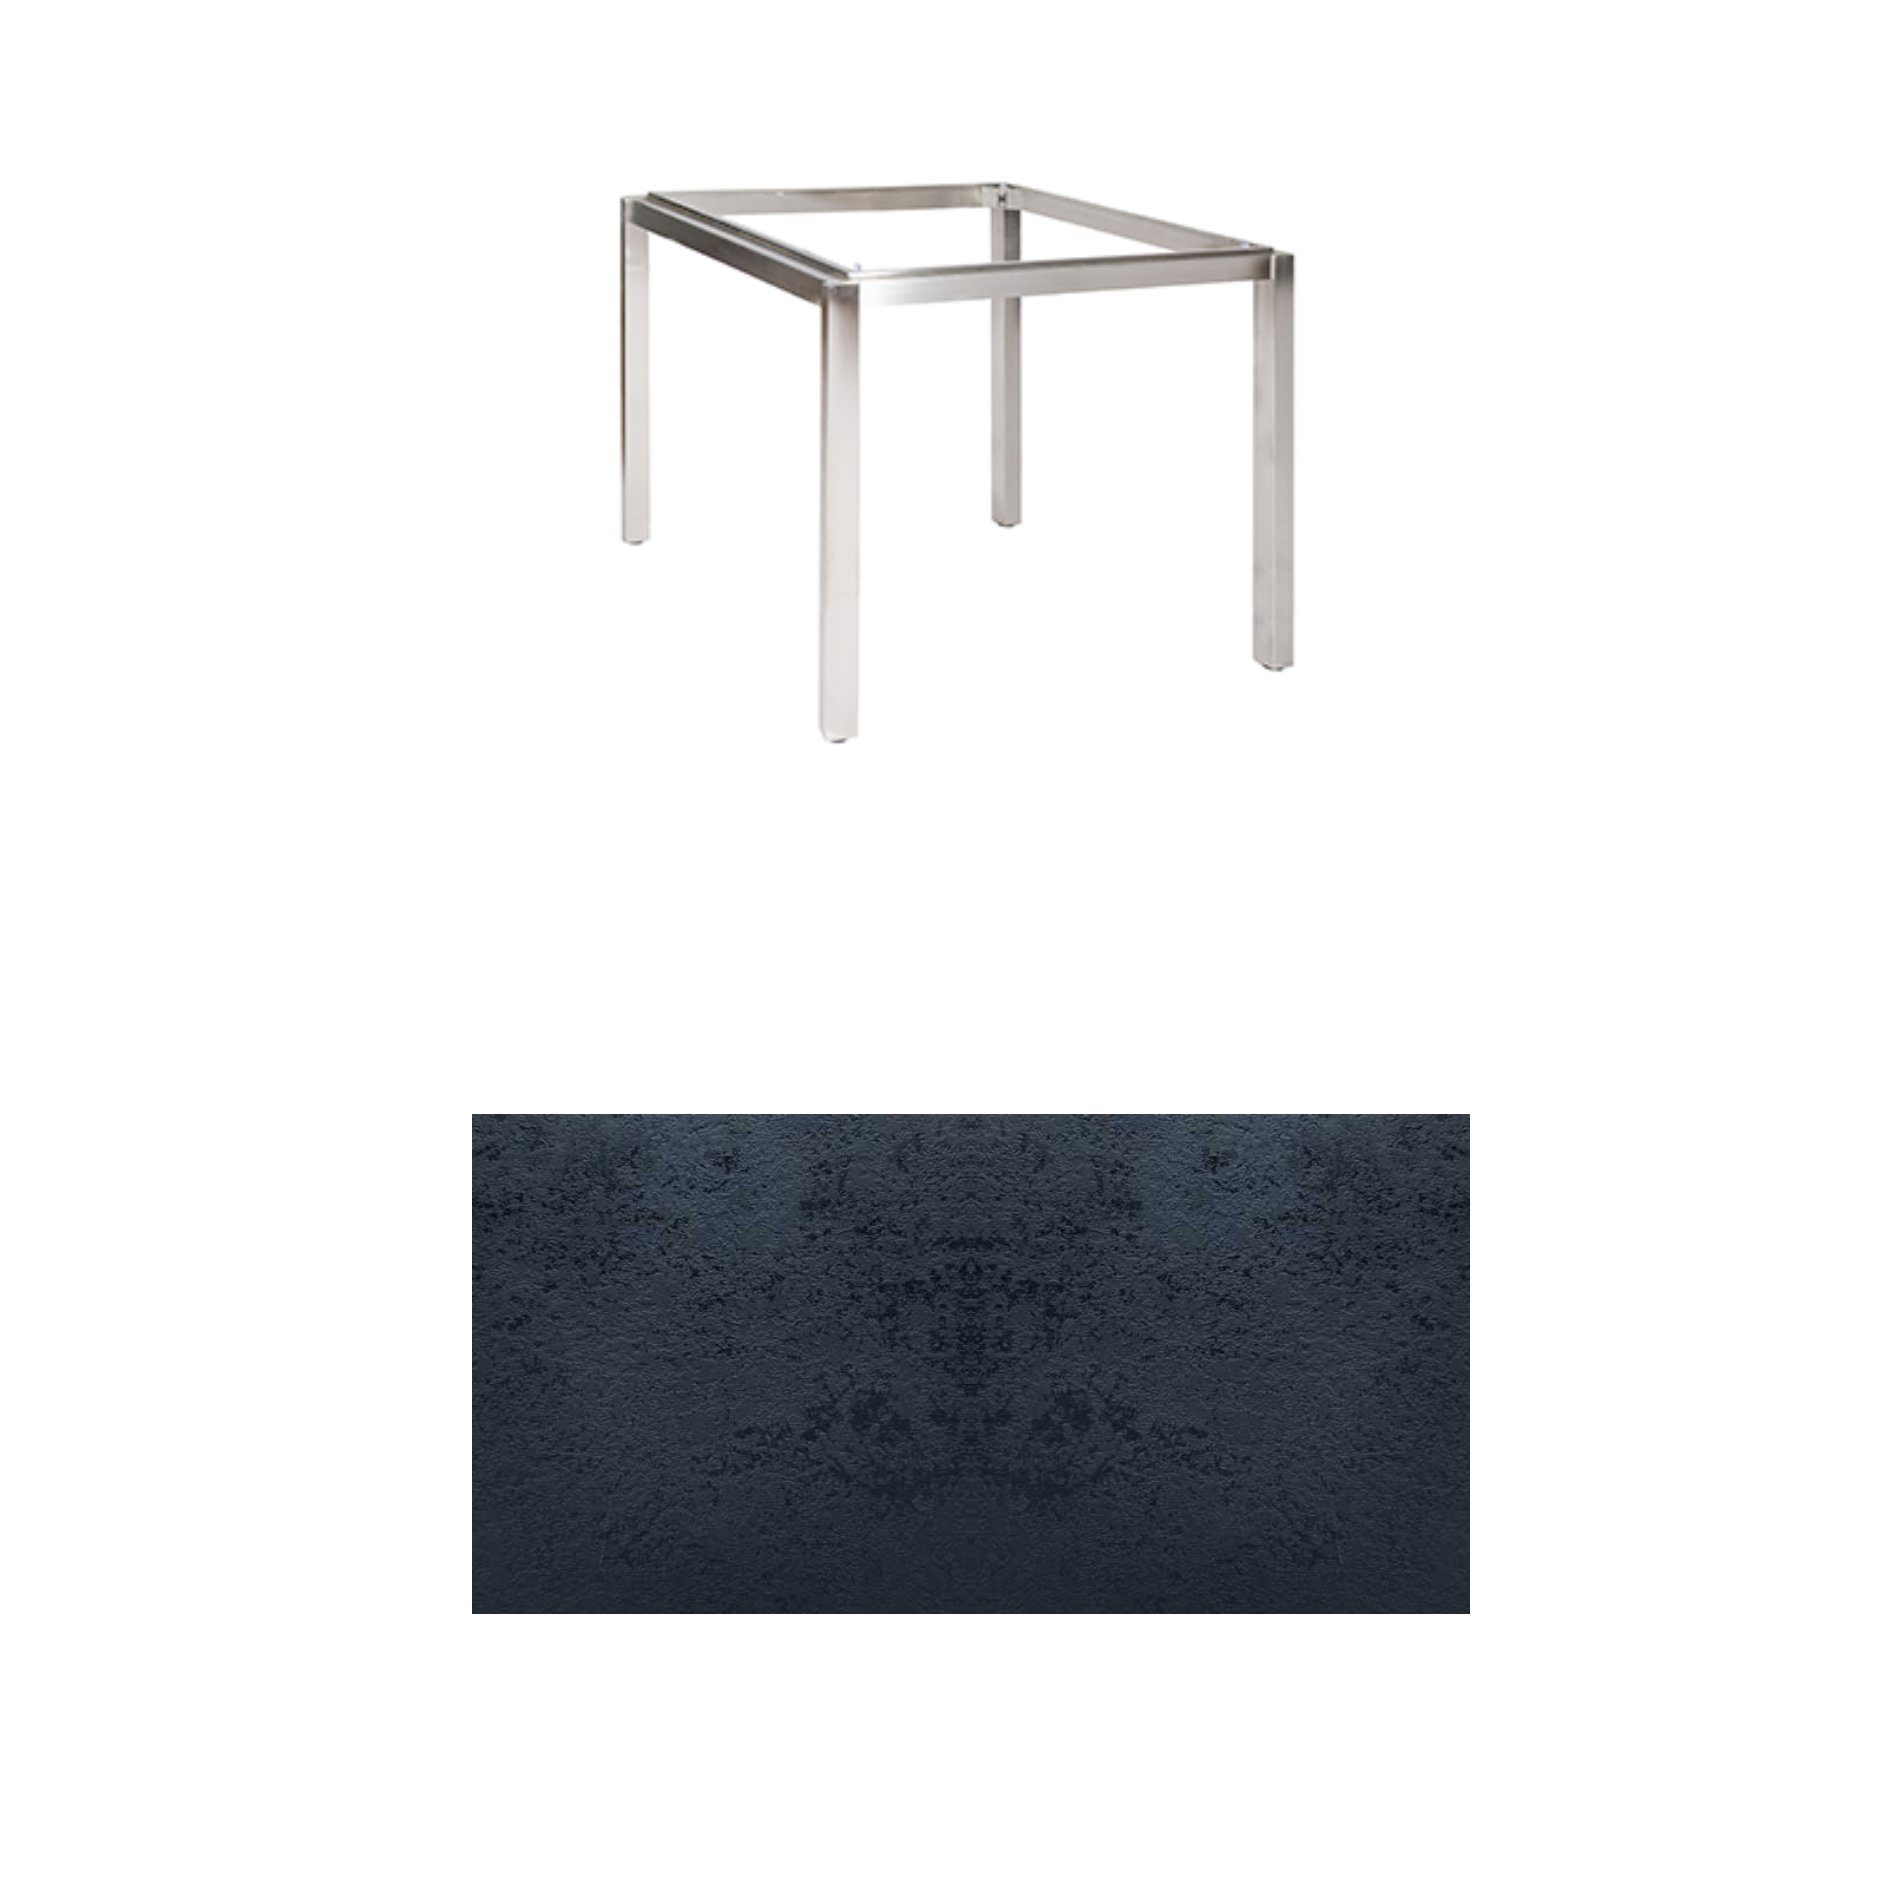 Jati & Kebon Tischgestell "Muri" 90x90 cm, Edelstahl, Tischplatte HPL schiefer schwarz